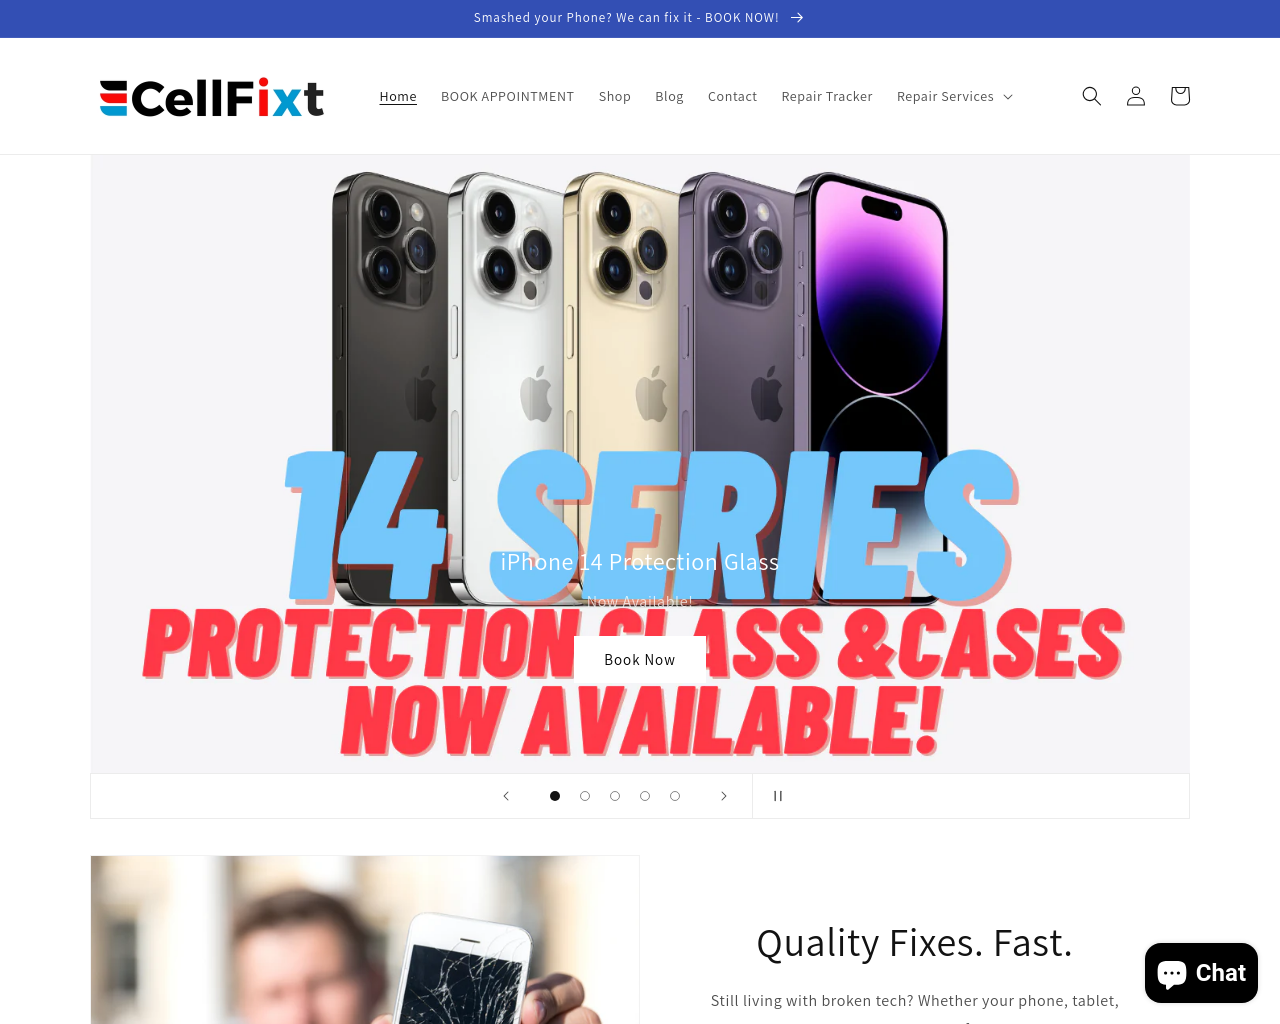 cellfixt.com